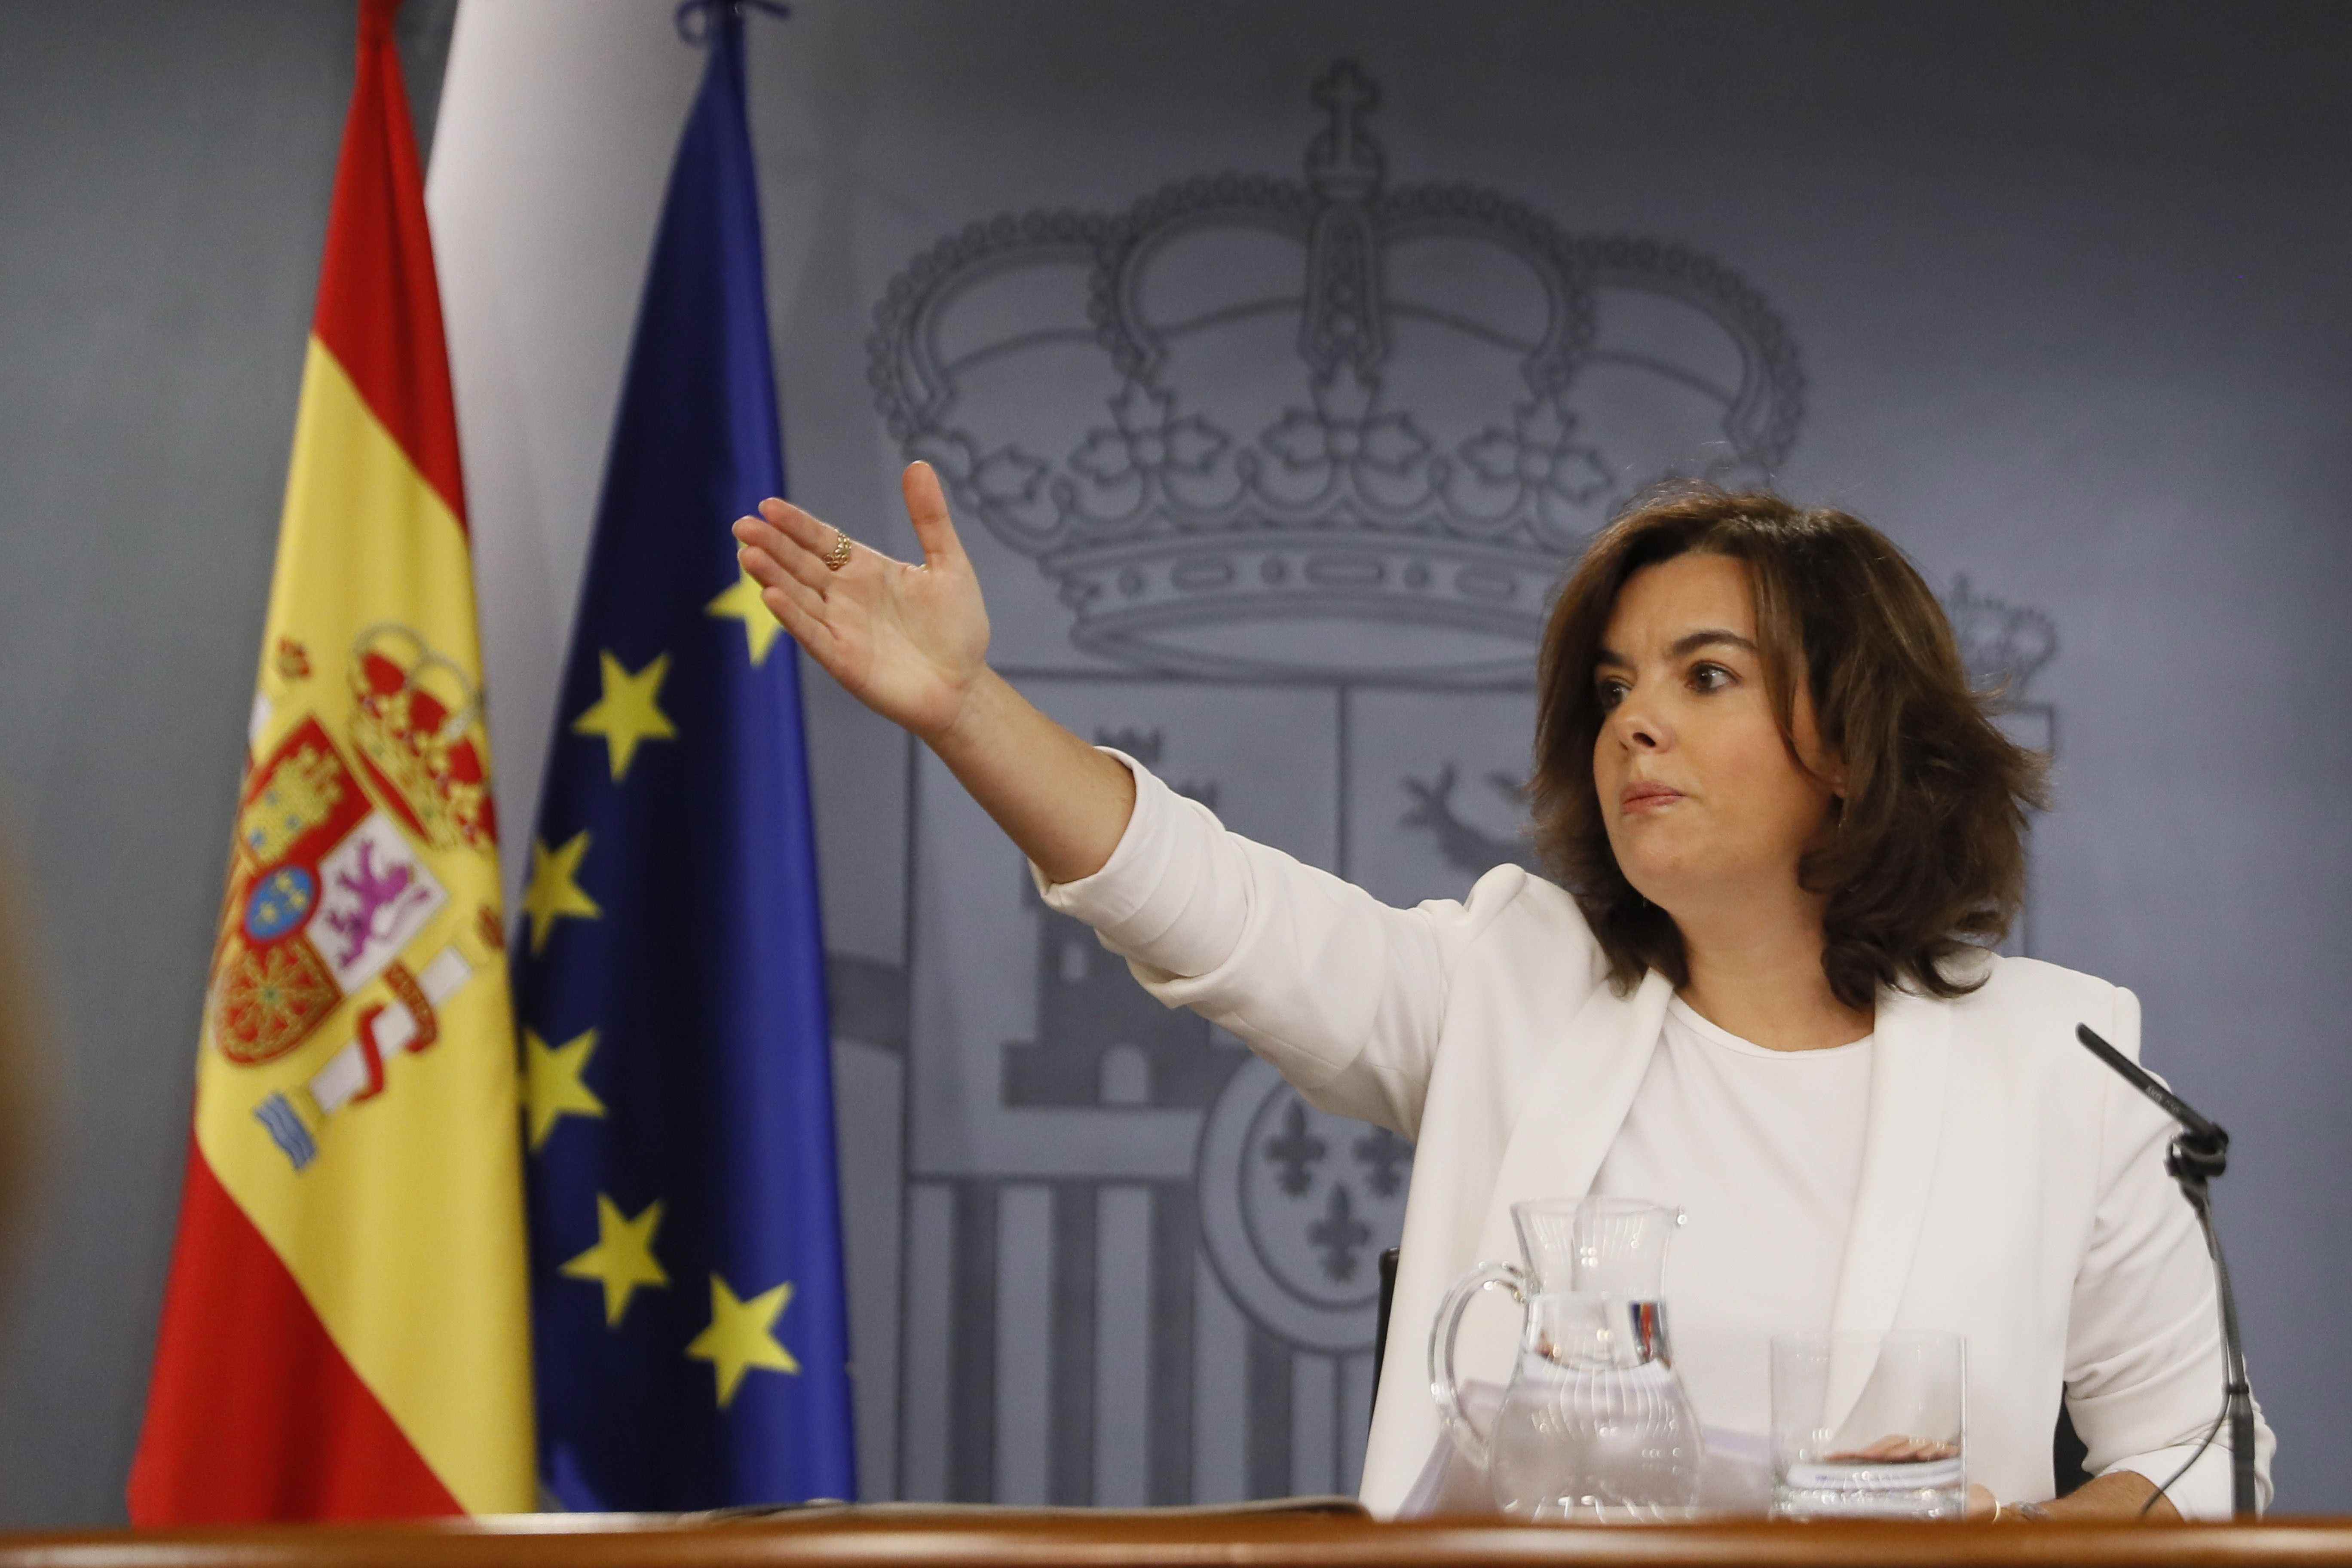 La Moncloa intentarà apropar-se a Puigdemont a canvi de cessions